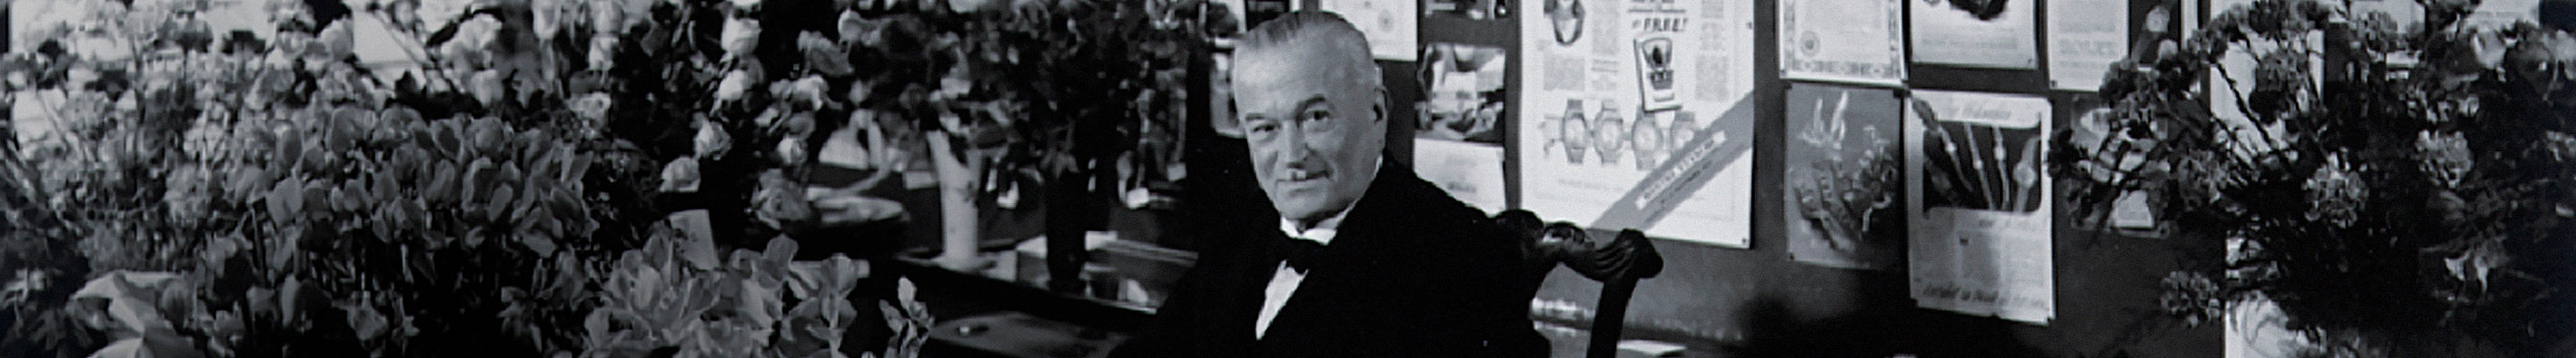 Hans Wilsdorf, founder of Rolex, in his Office